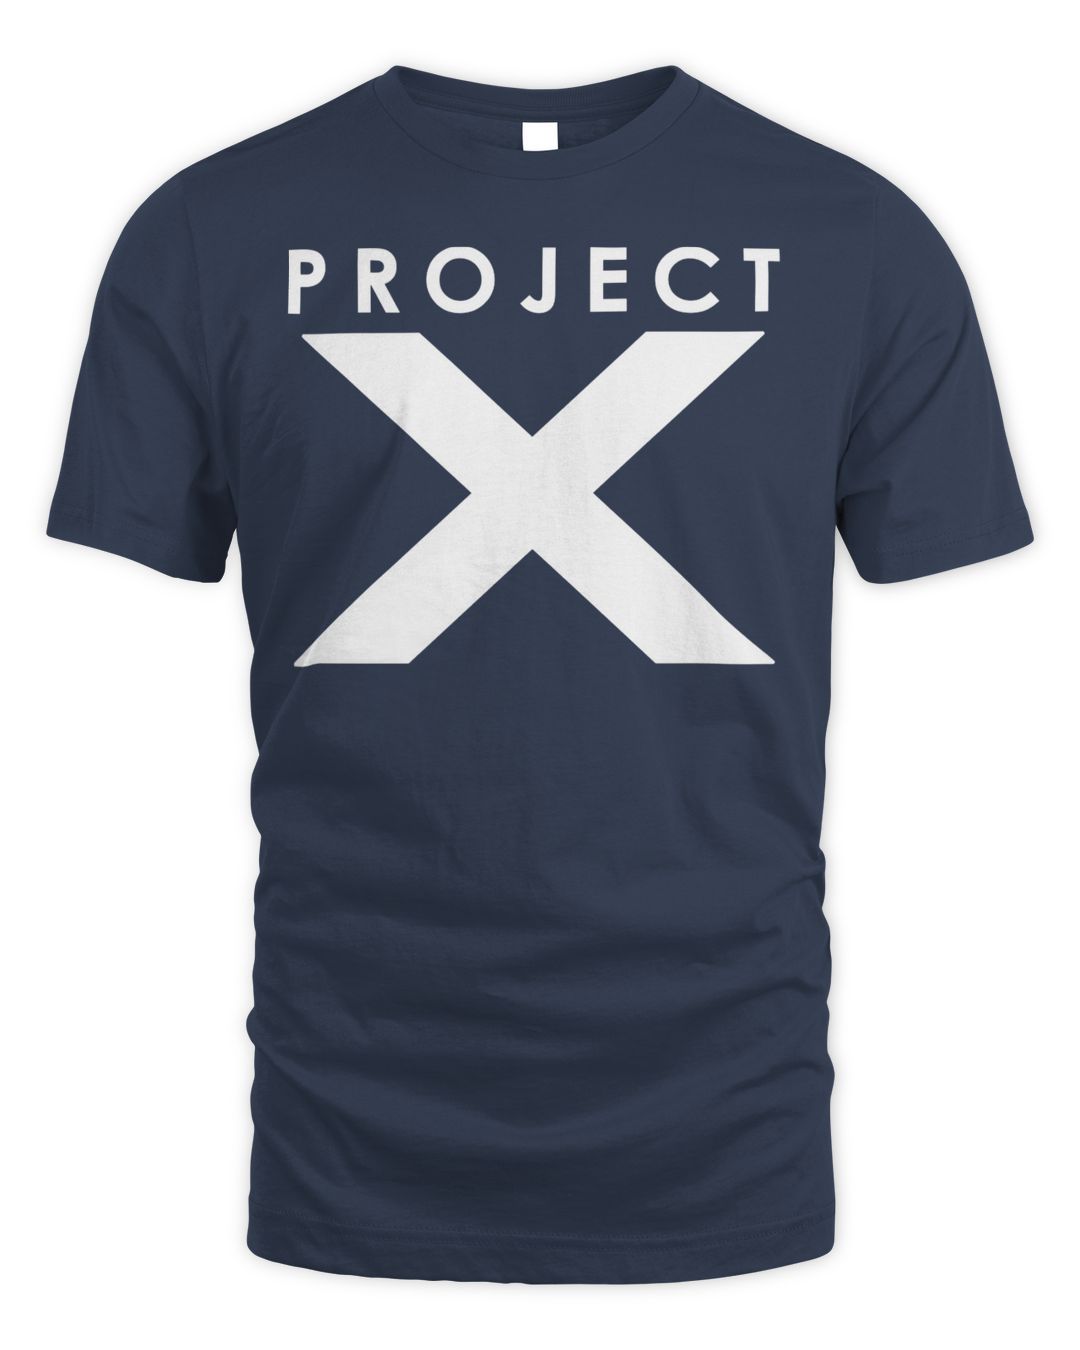 Ken Carson Merch Project X Shirt